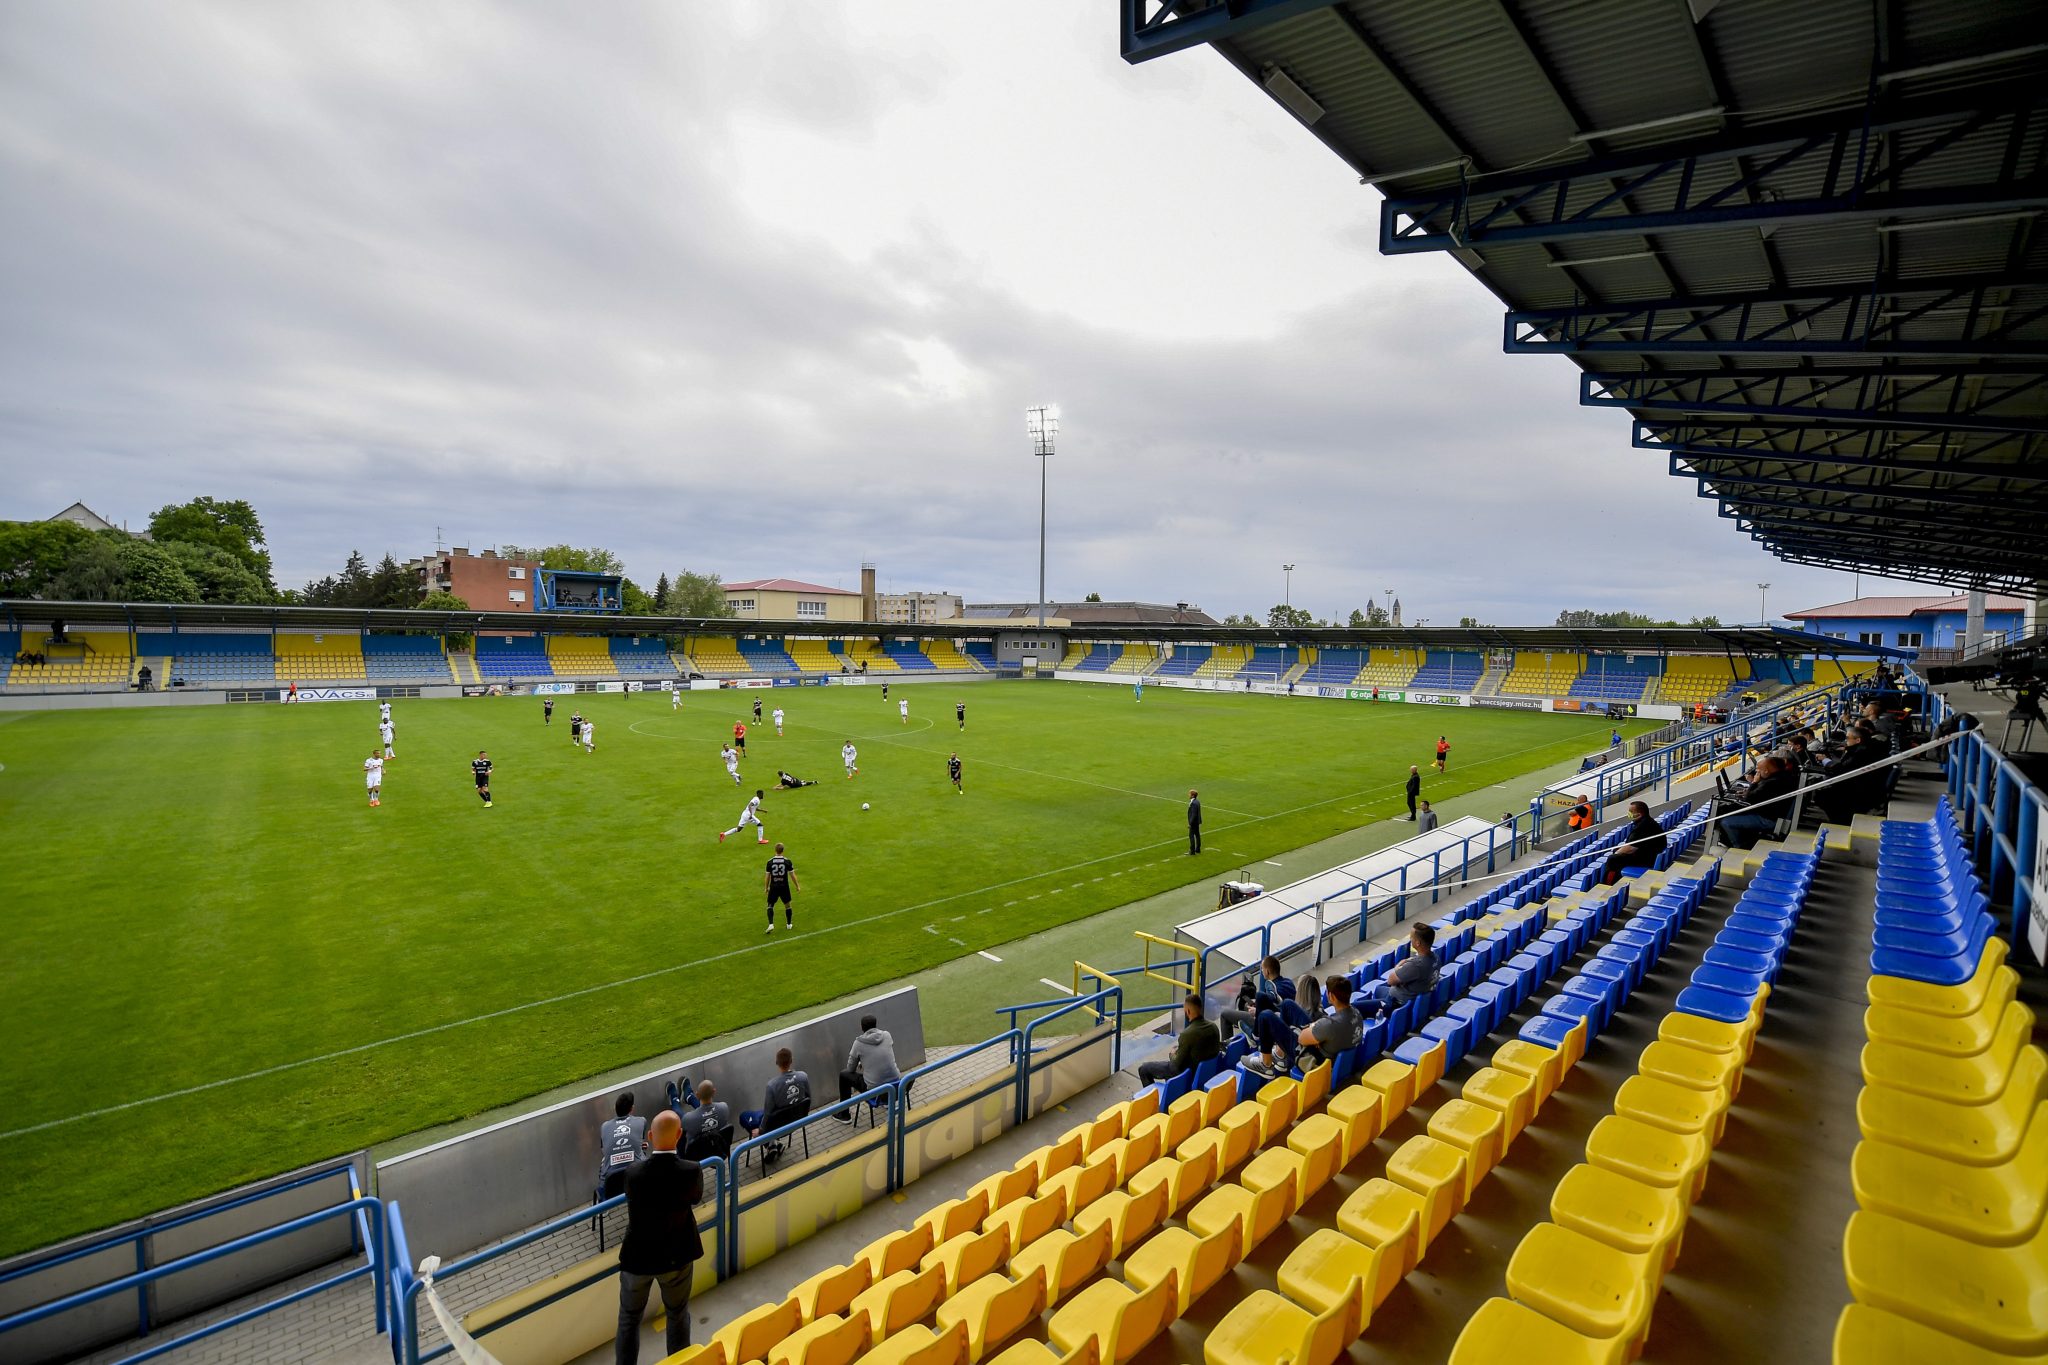 कोरोनाका बीच हंगेरीको फुटबलमा नयाँ कदम : स्टेडियममा जान दर्शकलाई अनुमति